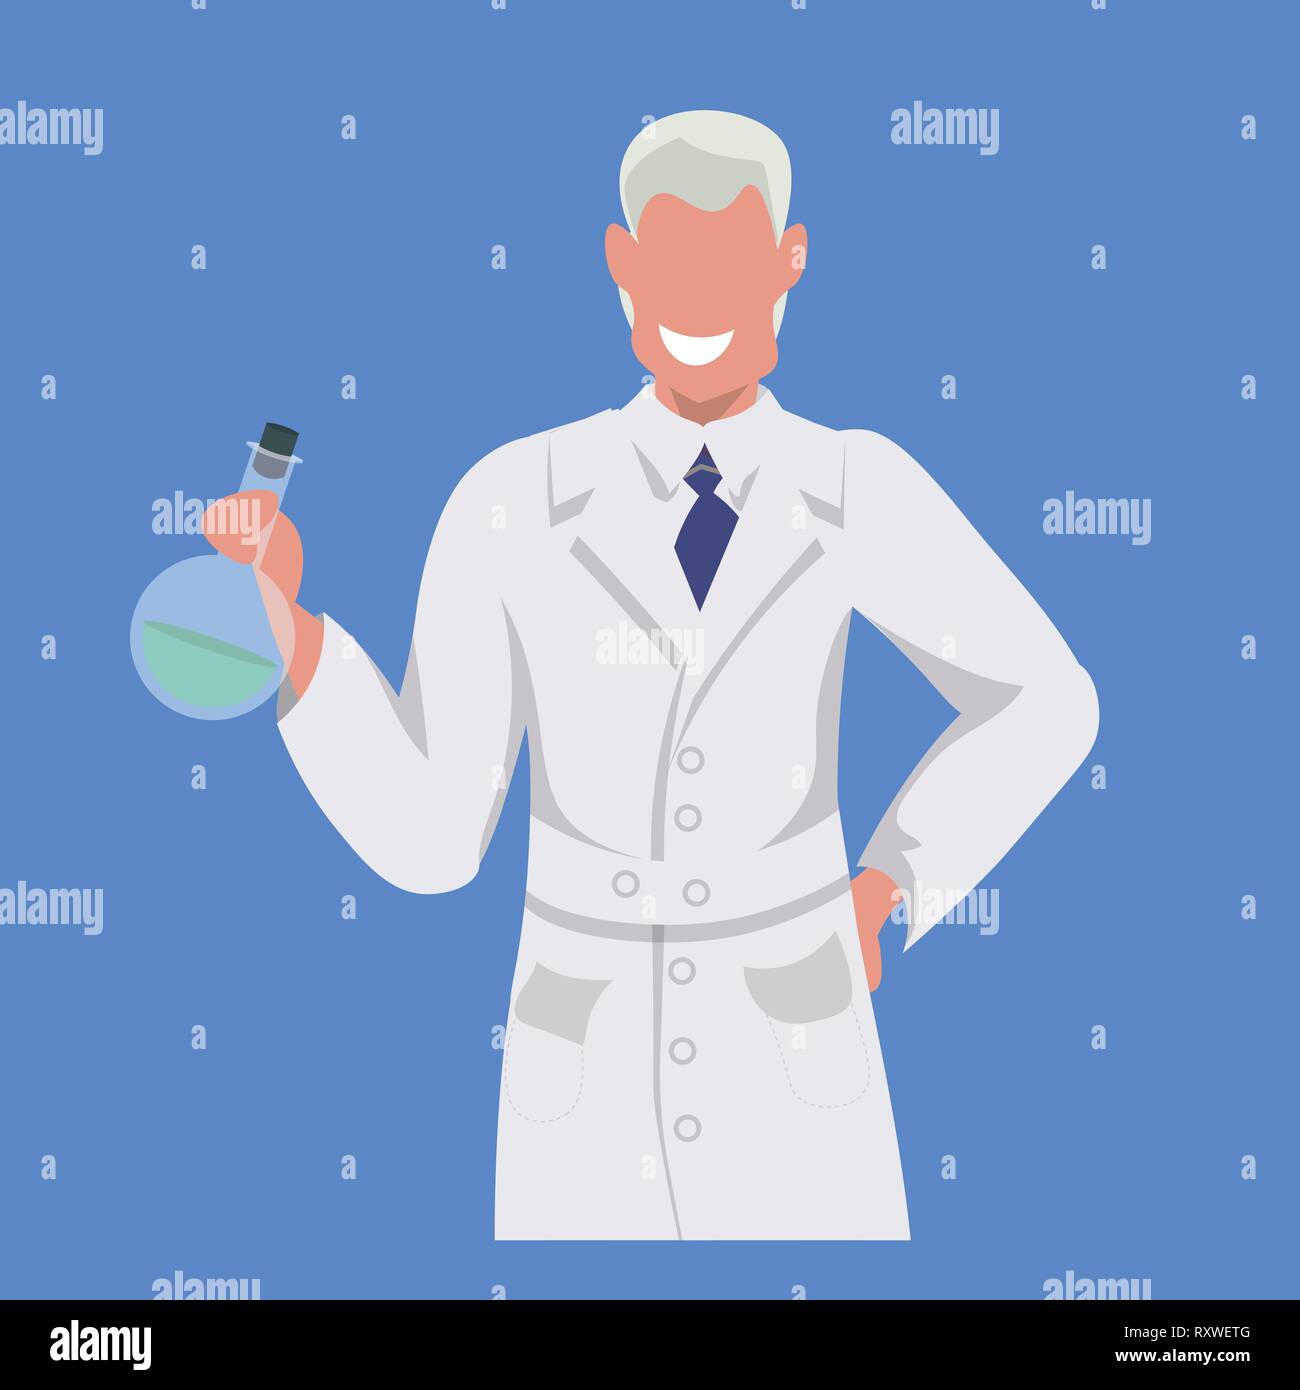 Männliche Wissenschaftler Reagenzglas mann Labortechniker in weiße Uniform medizinischer Arbeiter professionelle Besetzung Konzept blauer Hintergrund, flach Stock Vektor